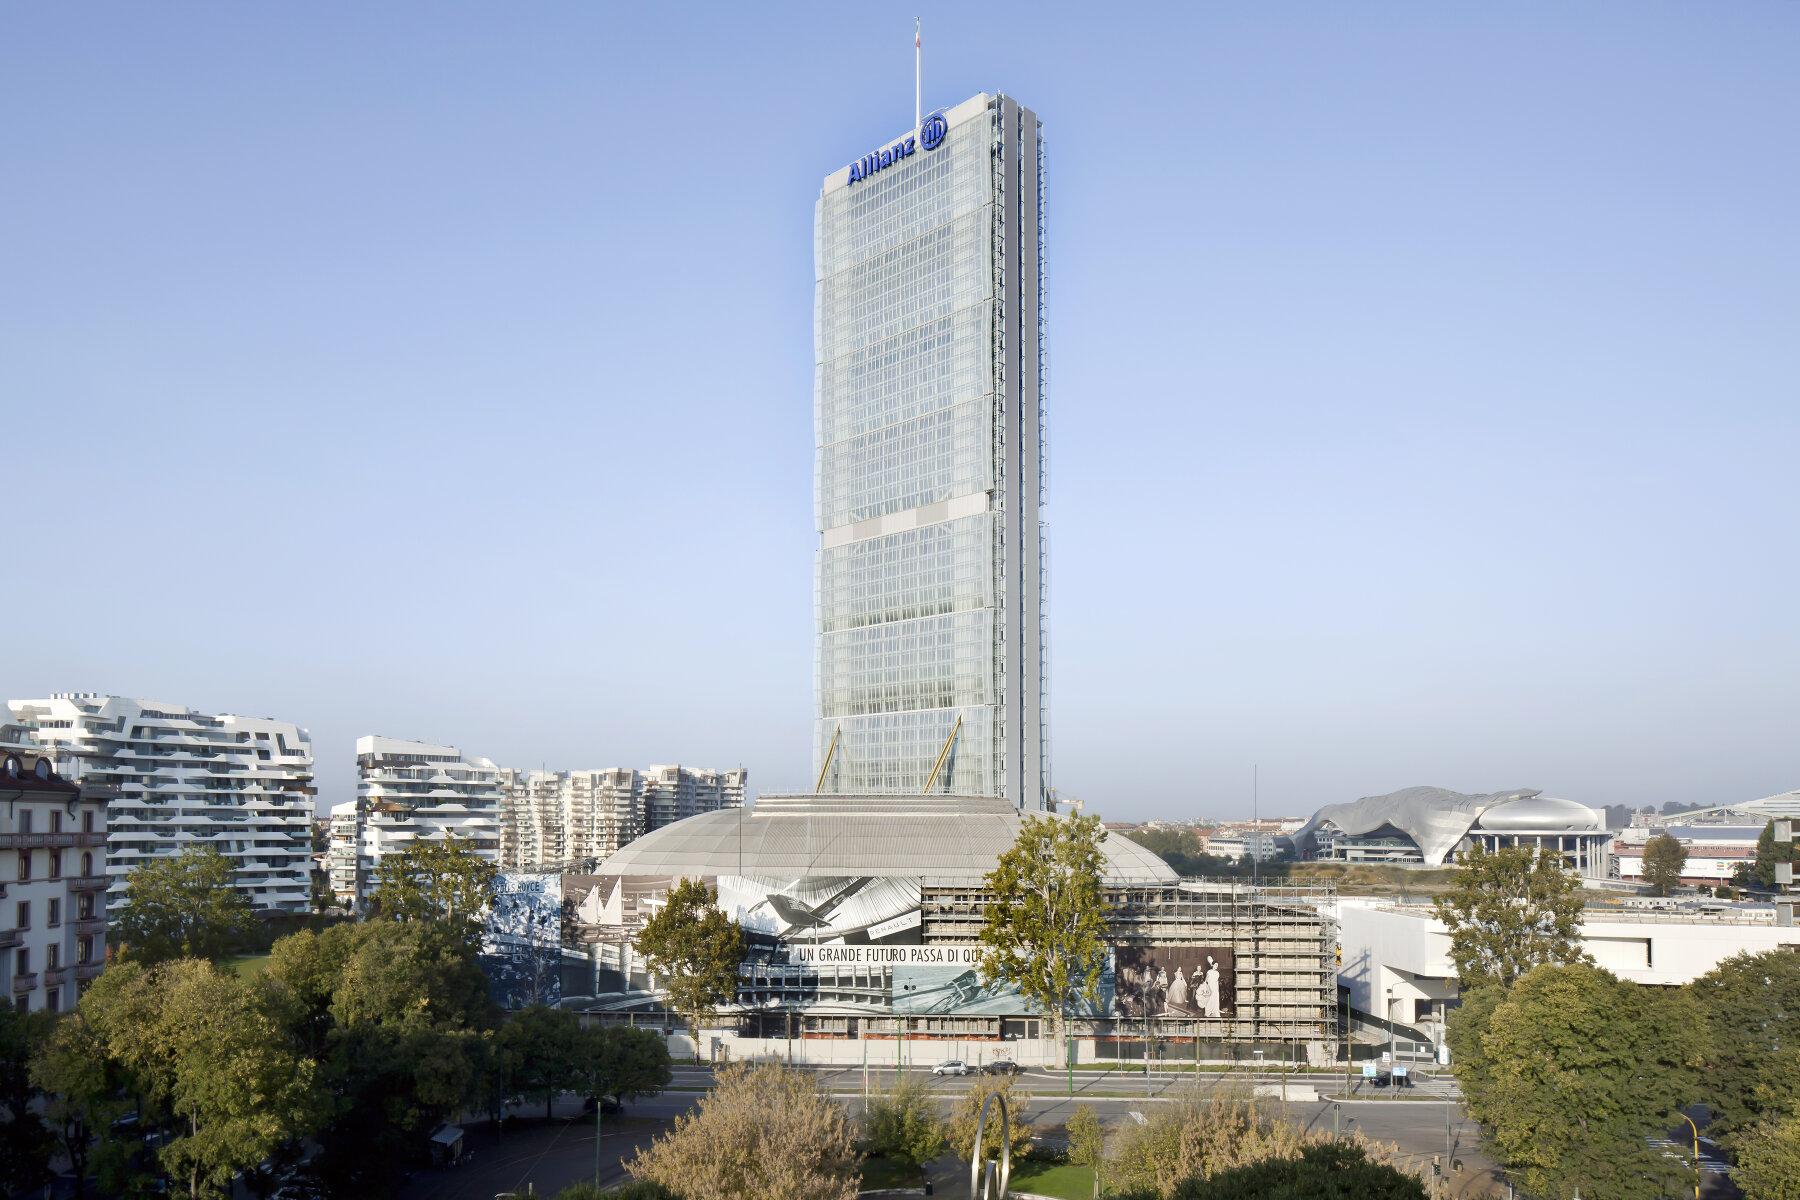 <p>Бизнес-центр Allianz Tower, Милан. По итогам 2010 года занял третье место среди главных небоскребов мира по версии Emporis Skyscraper Award</p>